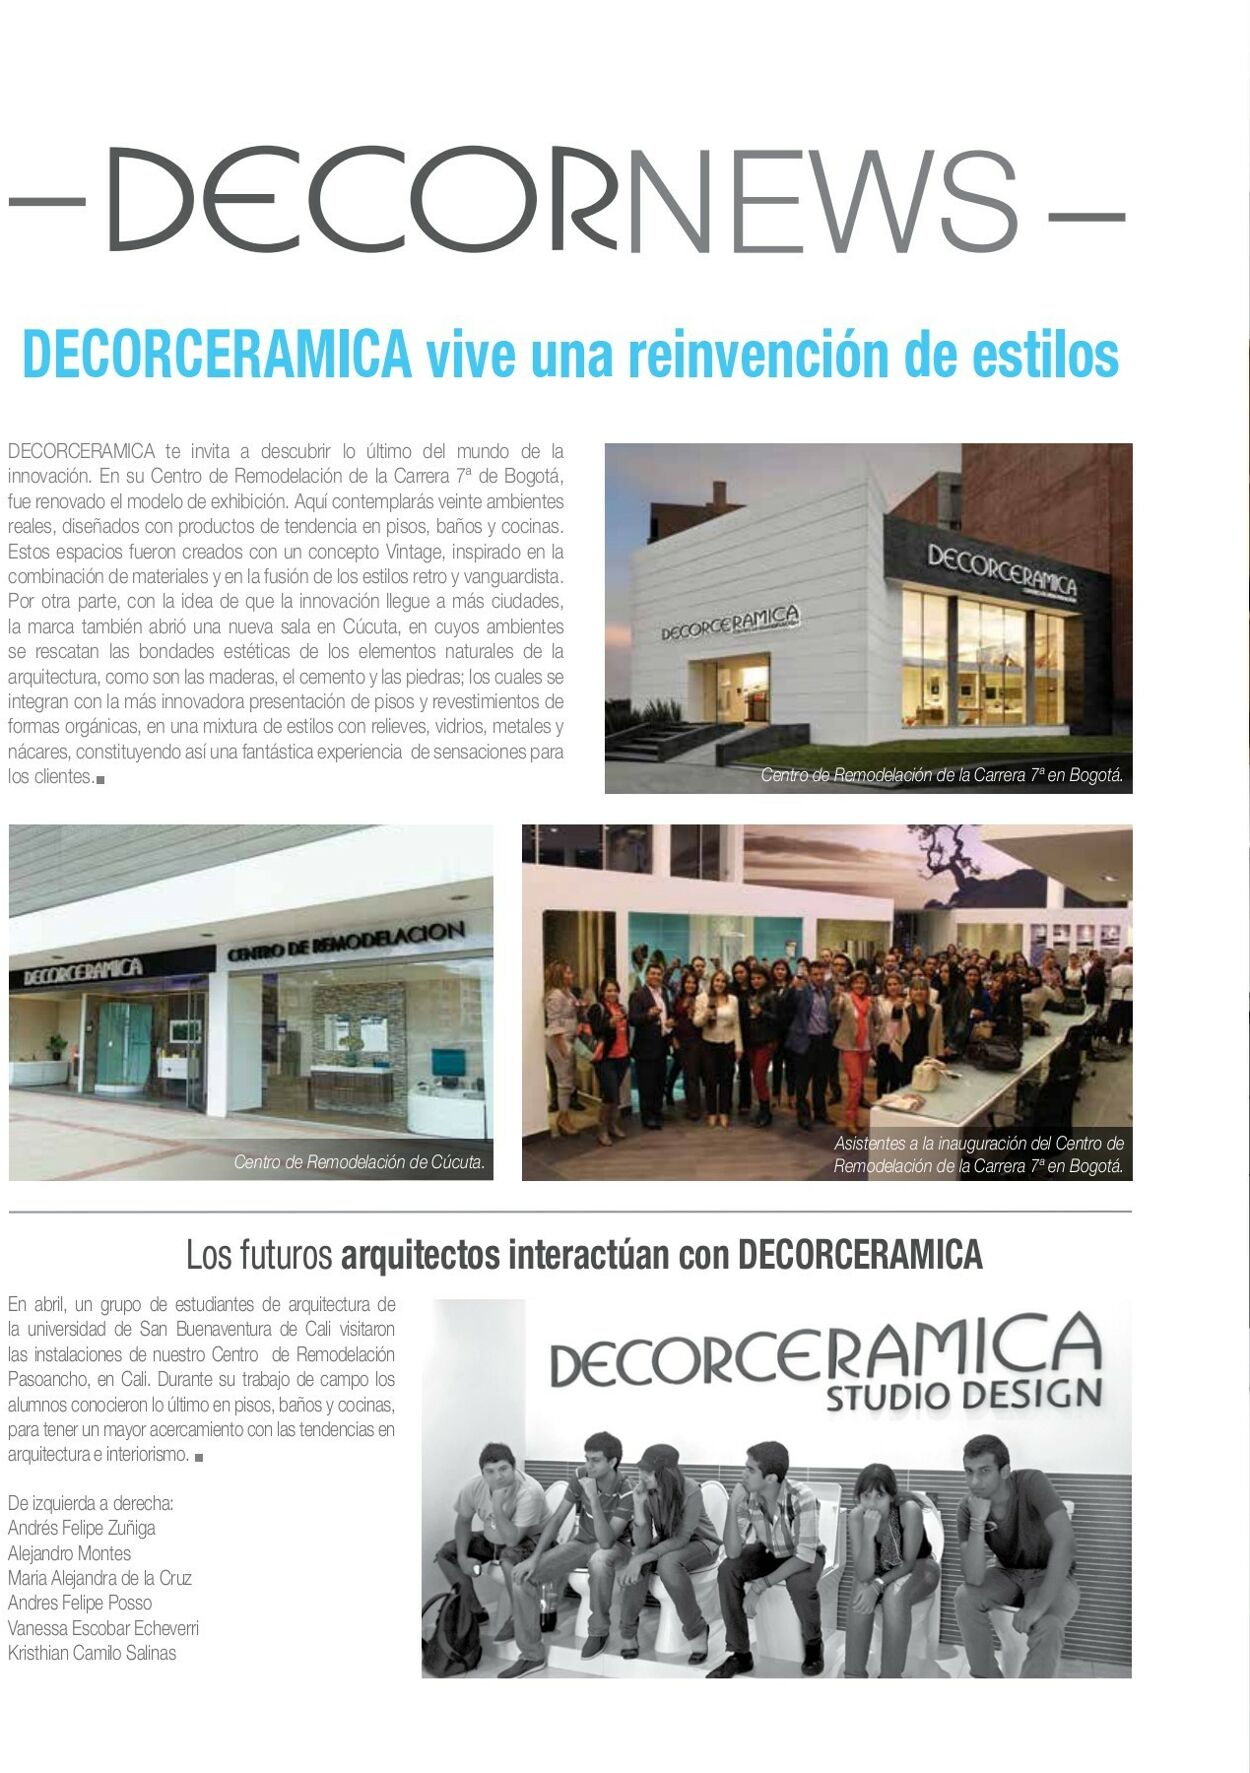 Catálogo Decorcerámica 01.01.2014 - 31.12.2014